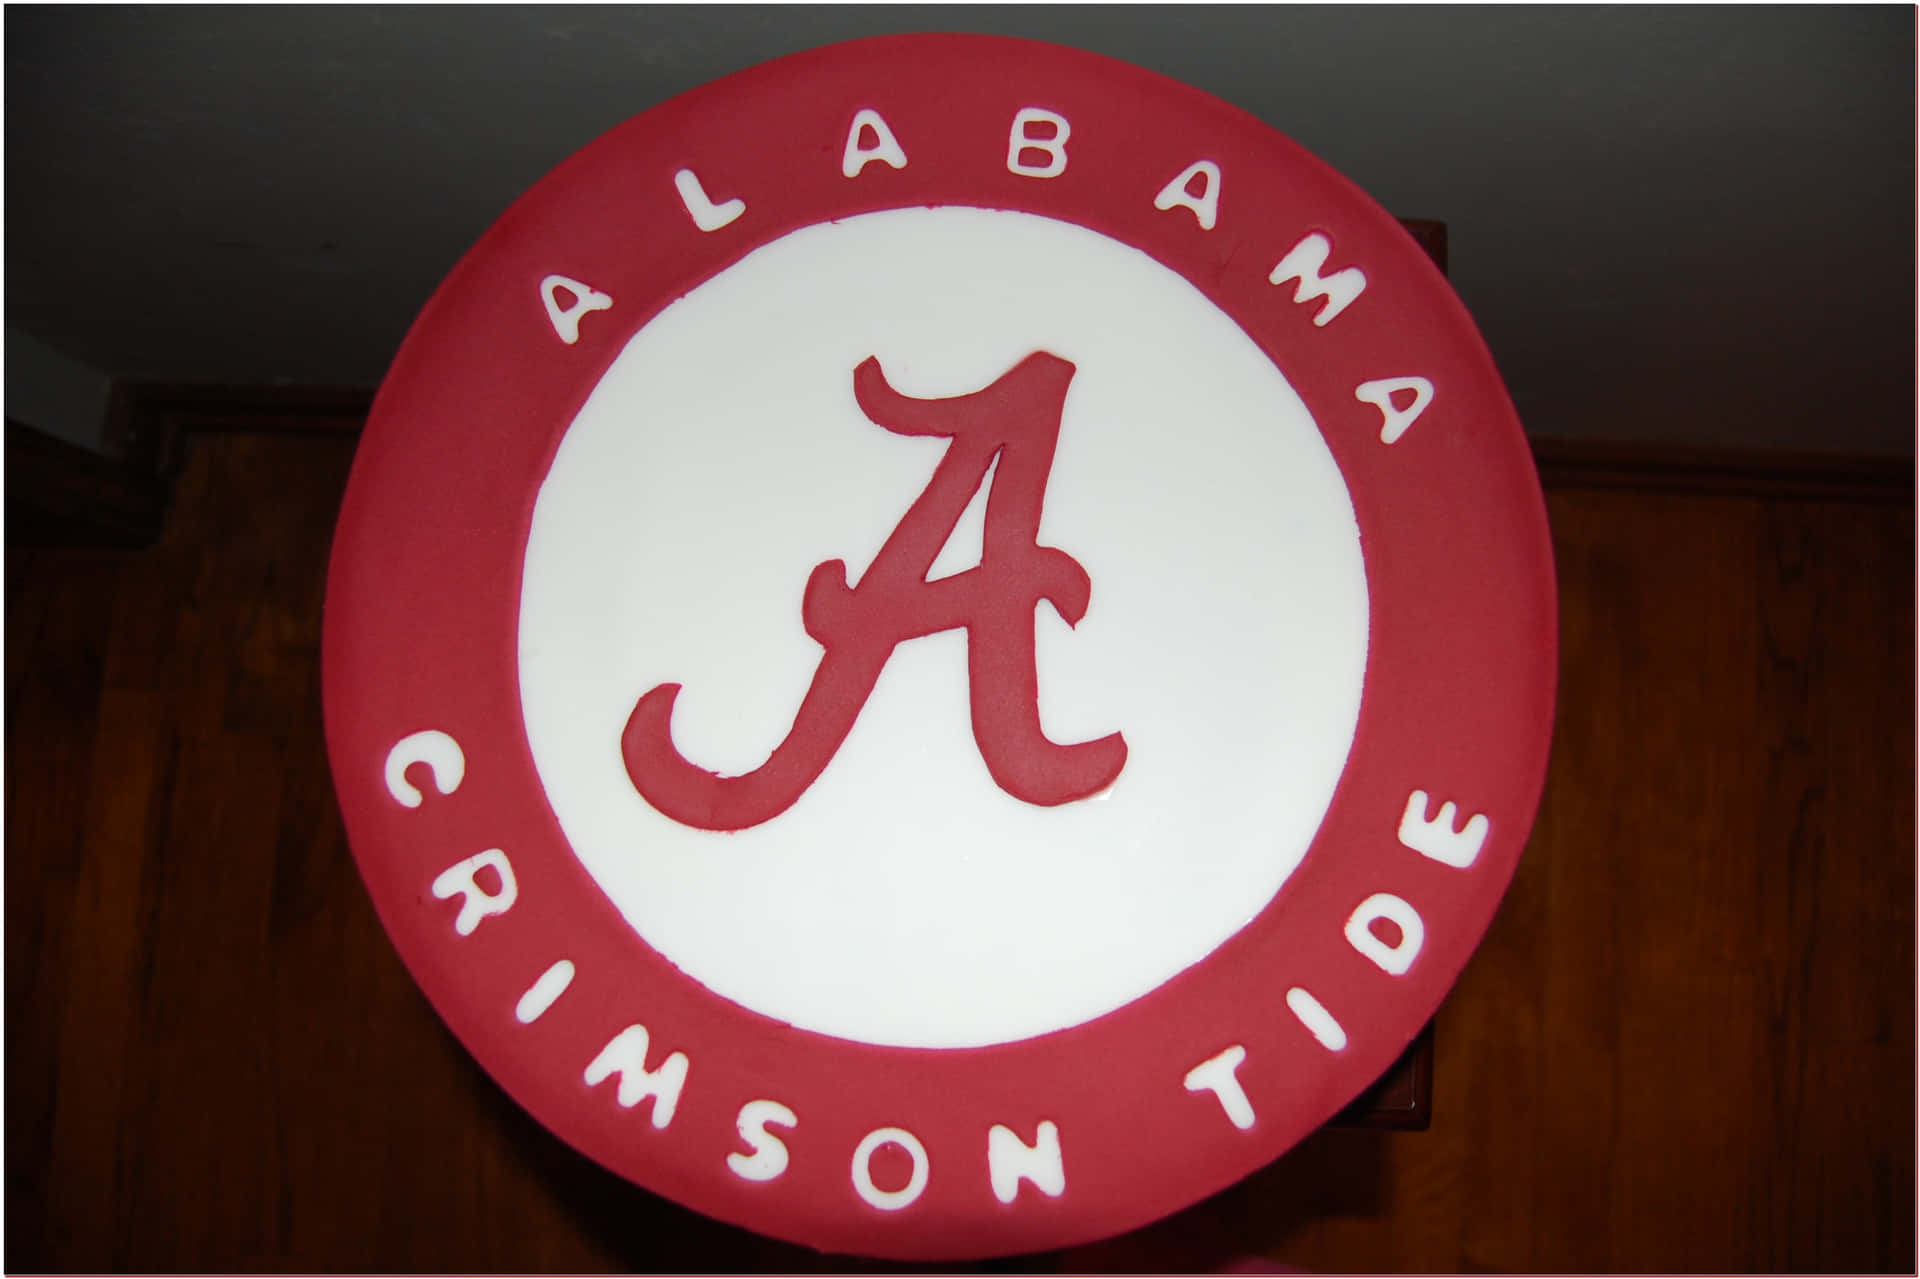 Rolltide Roll Per Gli Alabama Crimson Tide